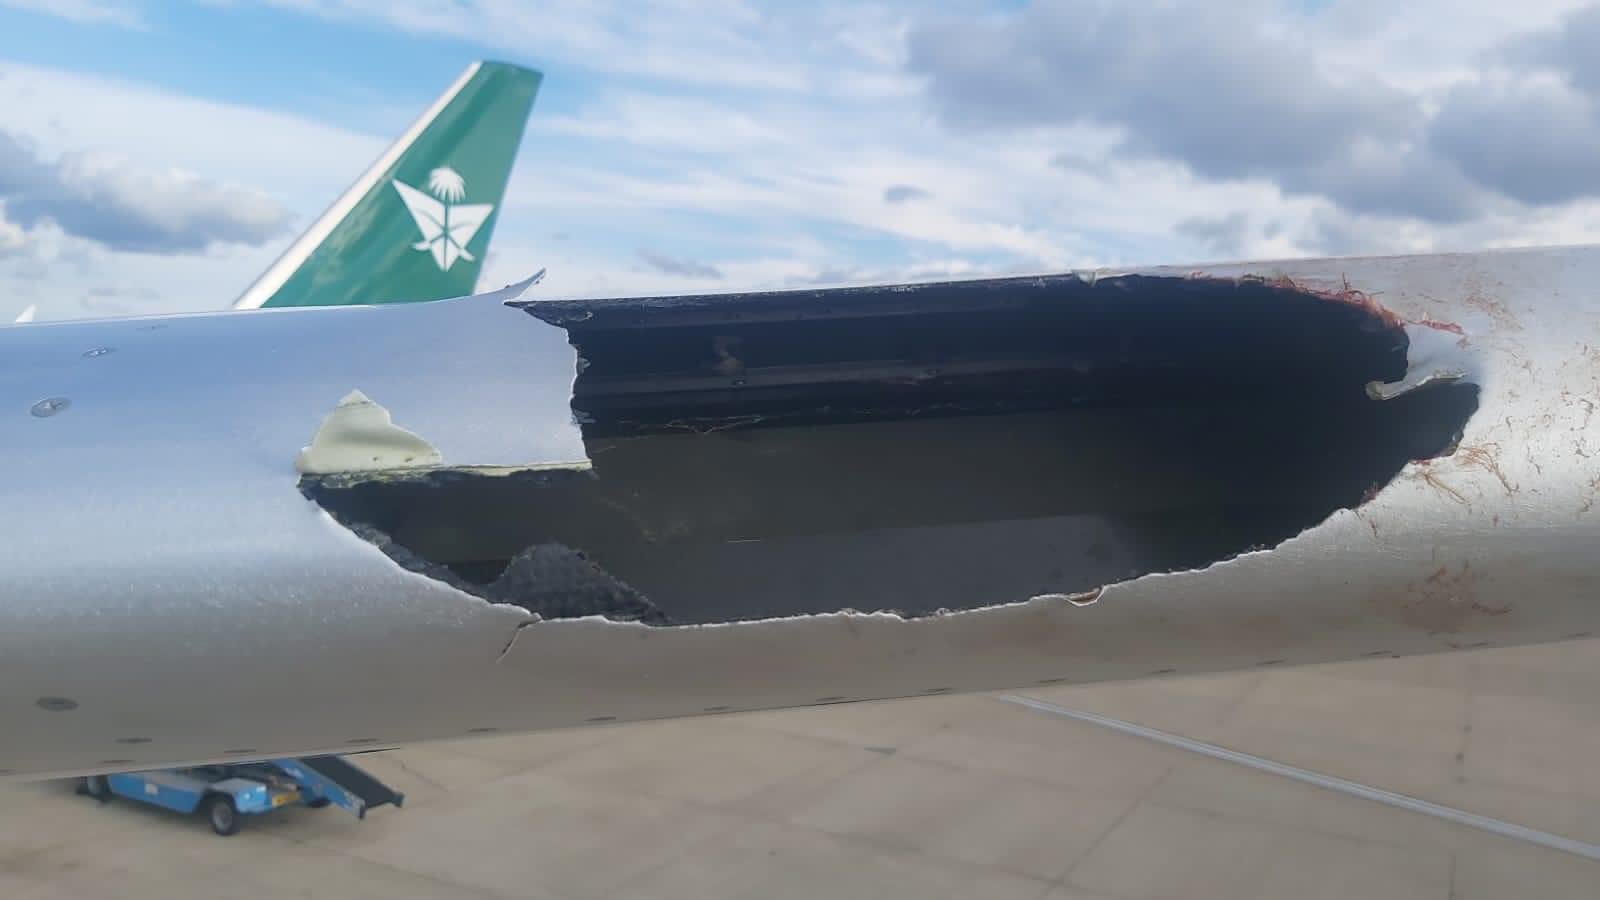 沙特阿拉伯航空一架波音787飞机在接近伦敦时遭鸟击 机翼损坏